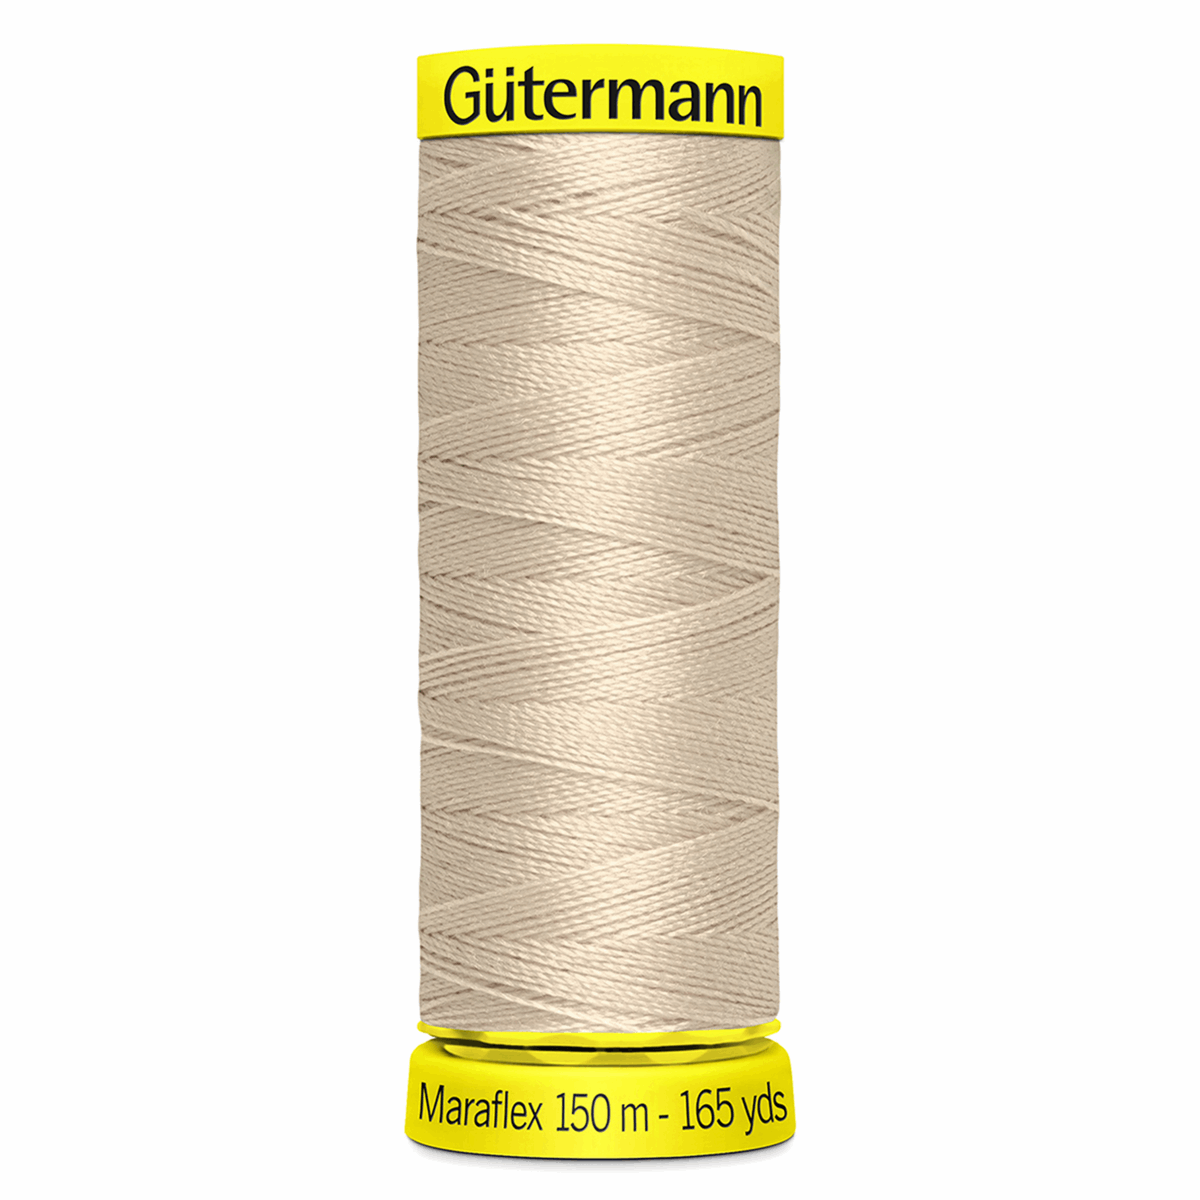 Gutermann Maraflex Elastic Sewing Thread 150m Natural 722